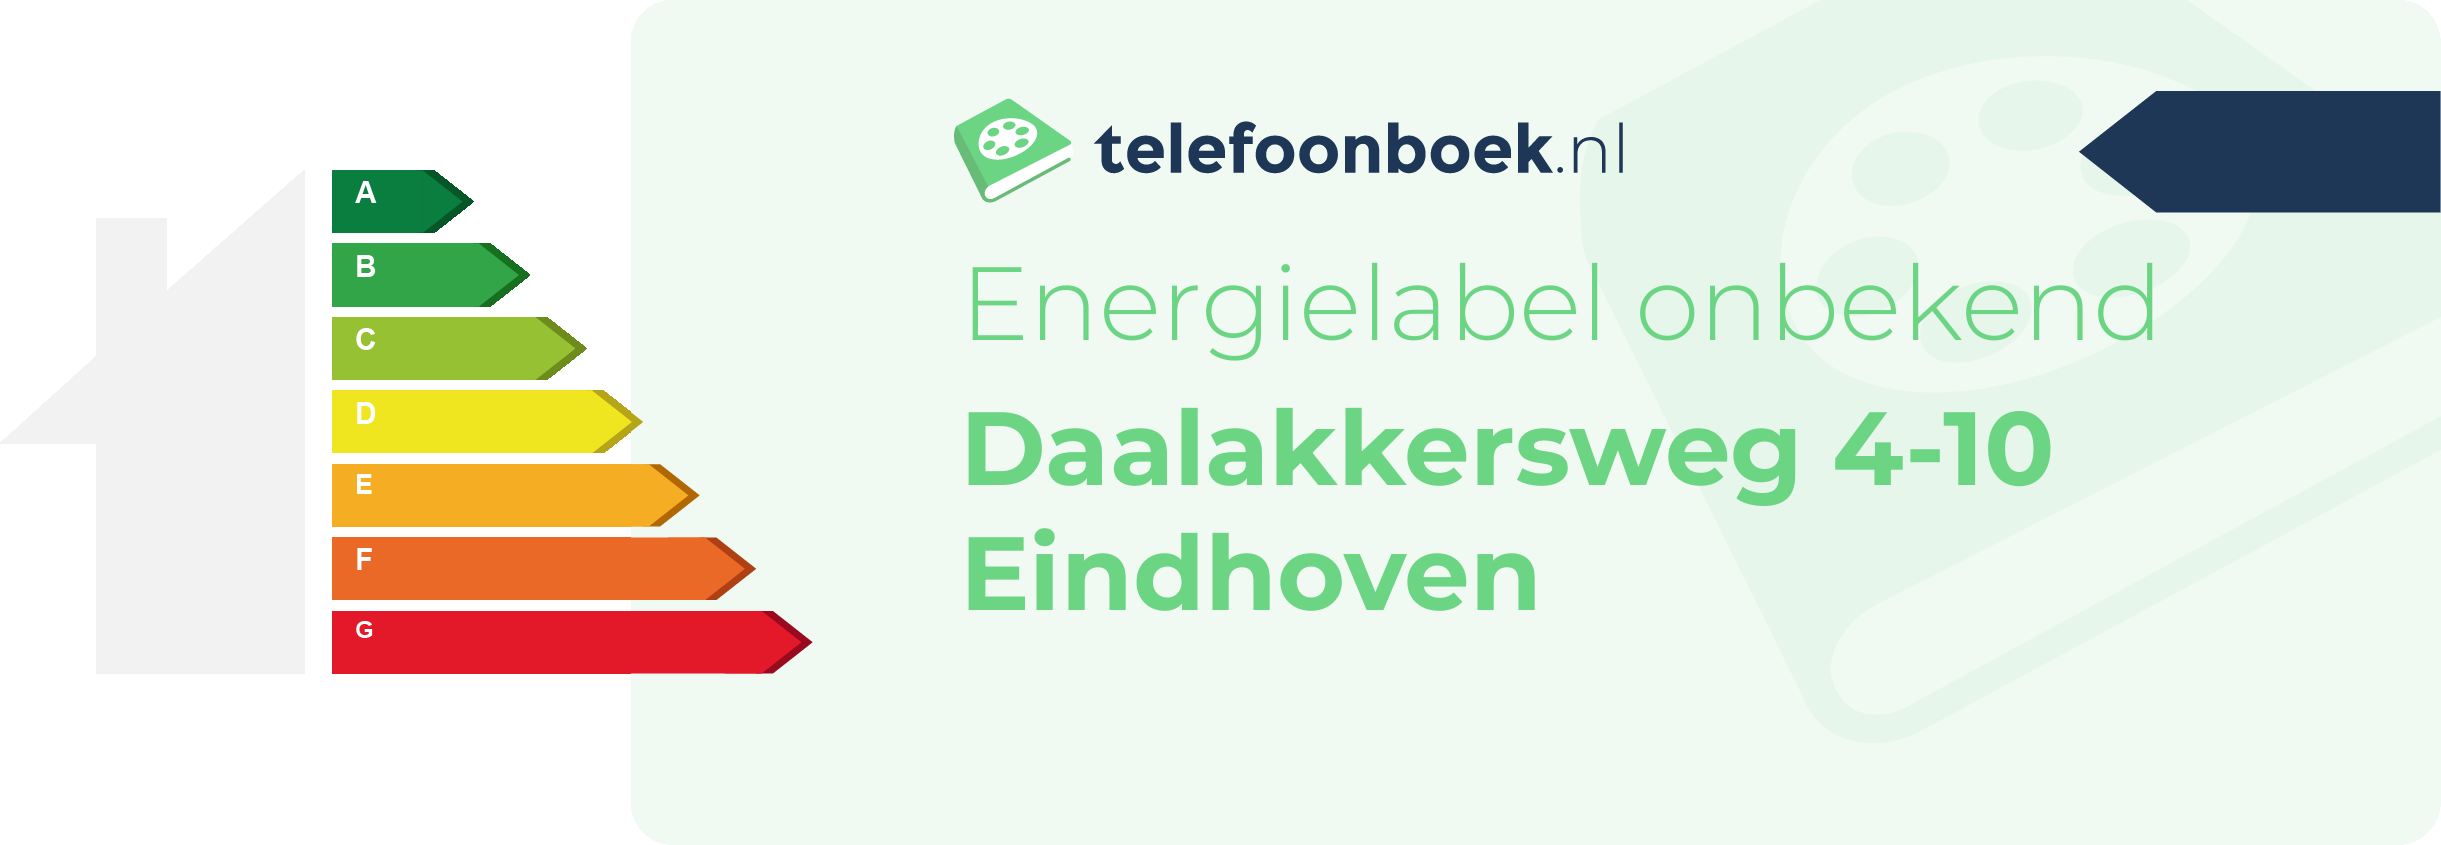 Energielabel Daalakkersweg 4-10 Eindhoven